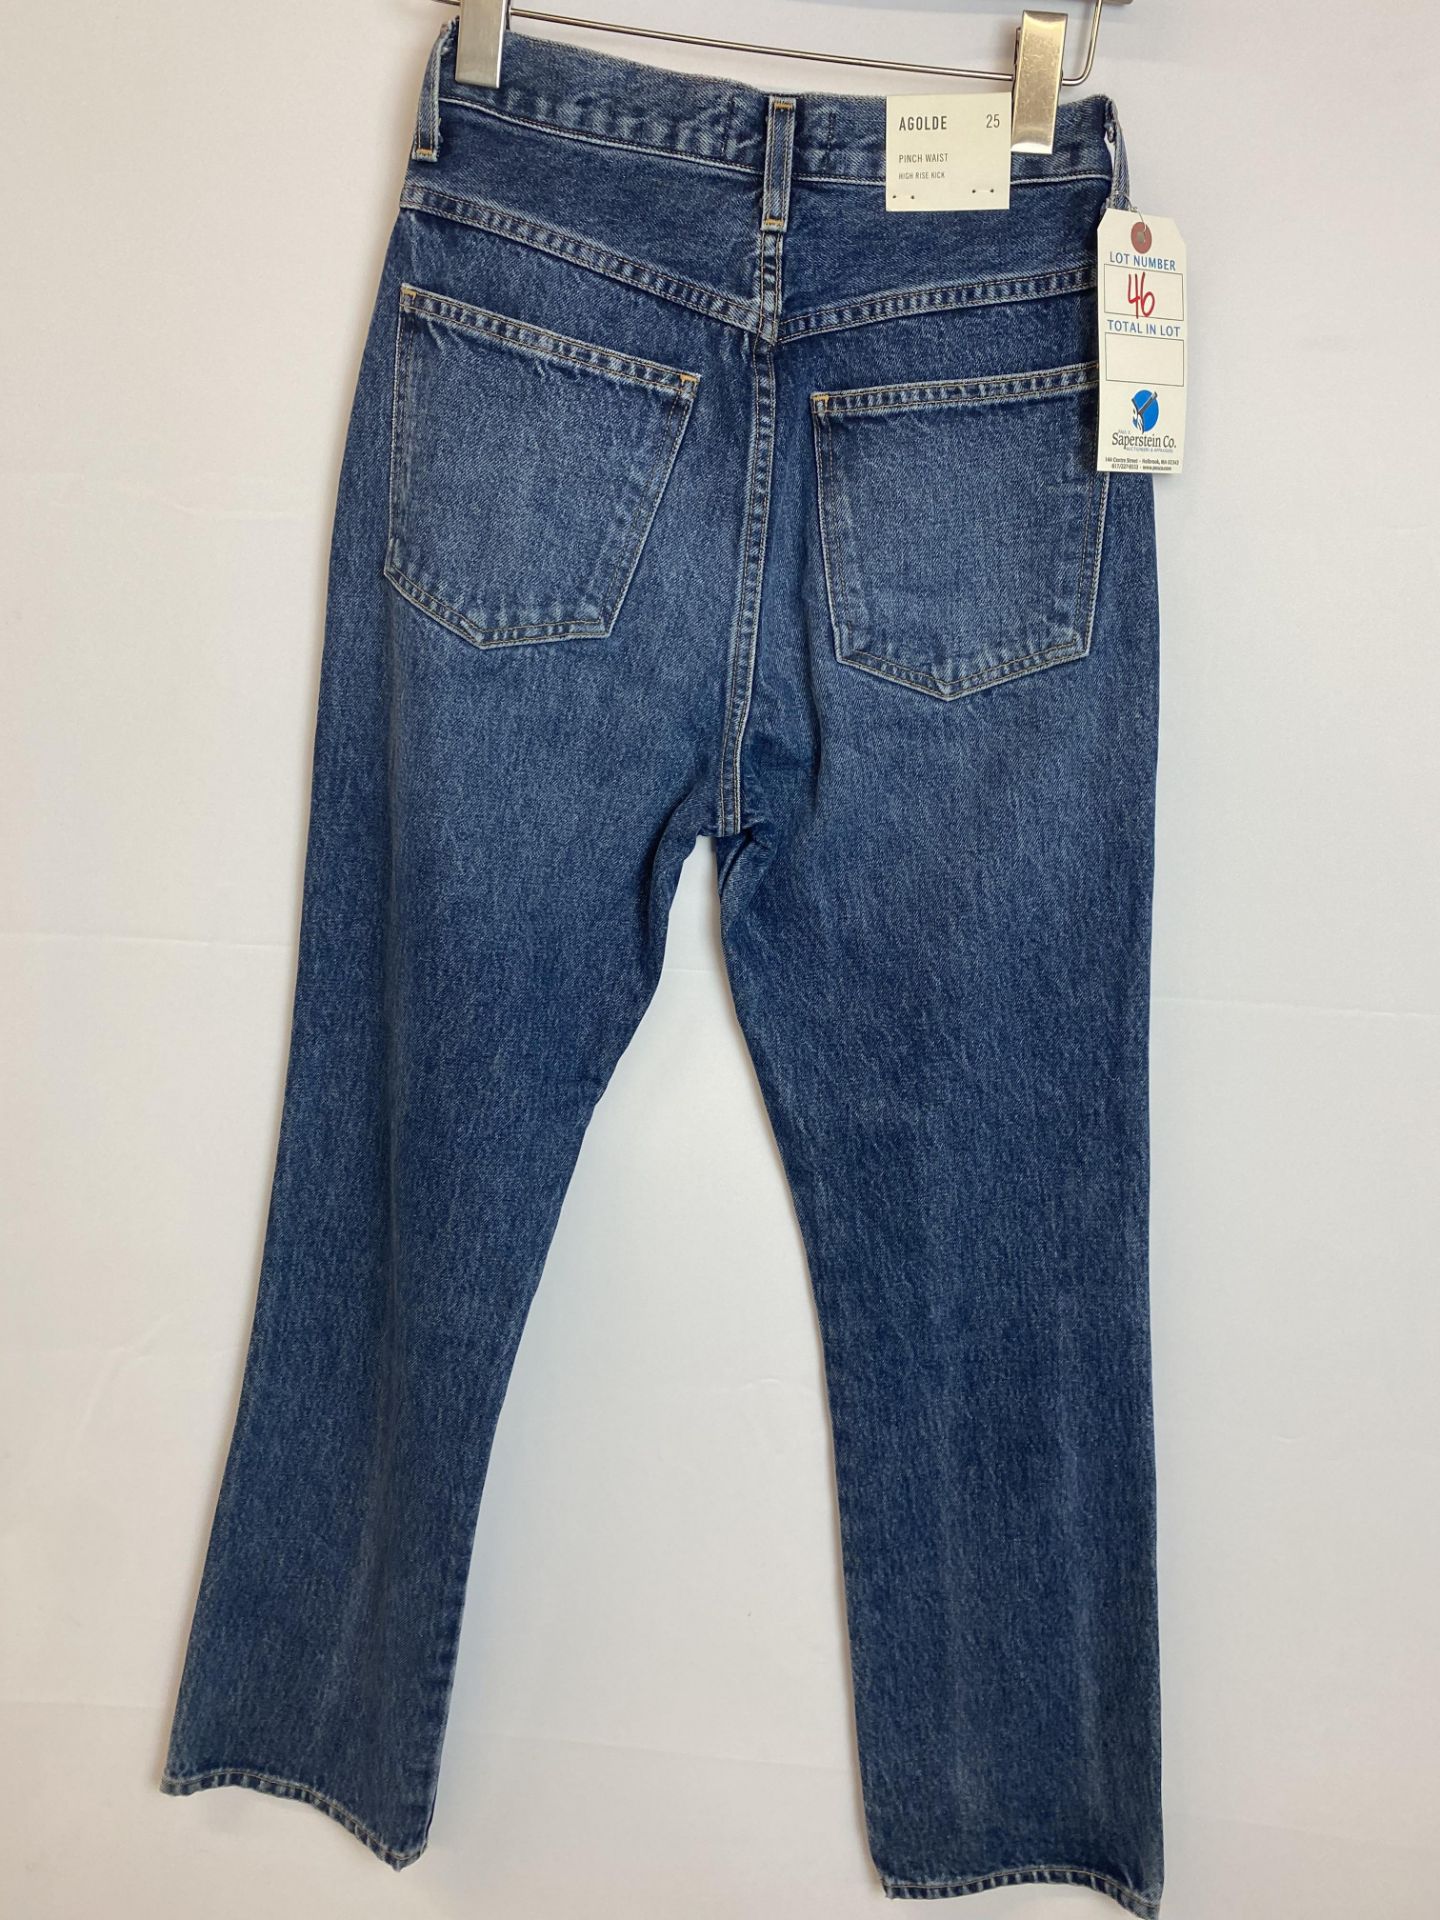 Agolde Pinch Waist Denim High Rise Kick Jean, Size 25, Original Retail Price: $198 - Bild 2 aus 4